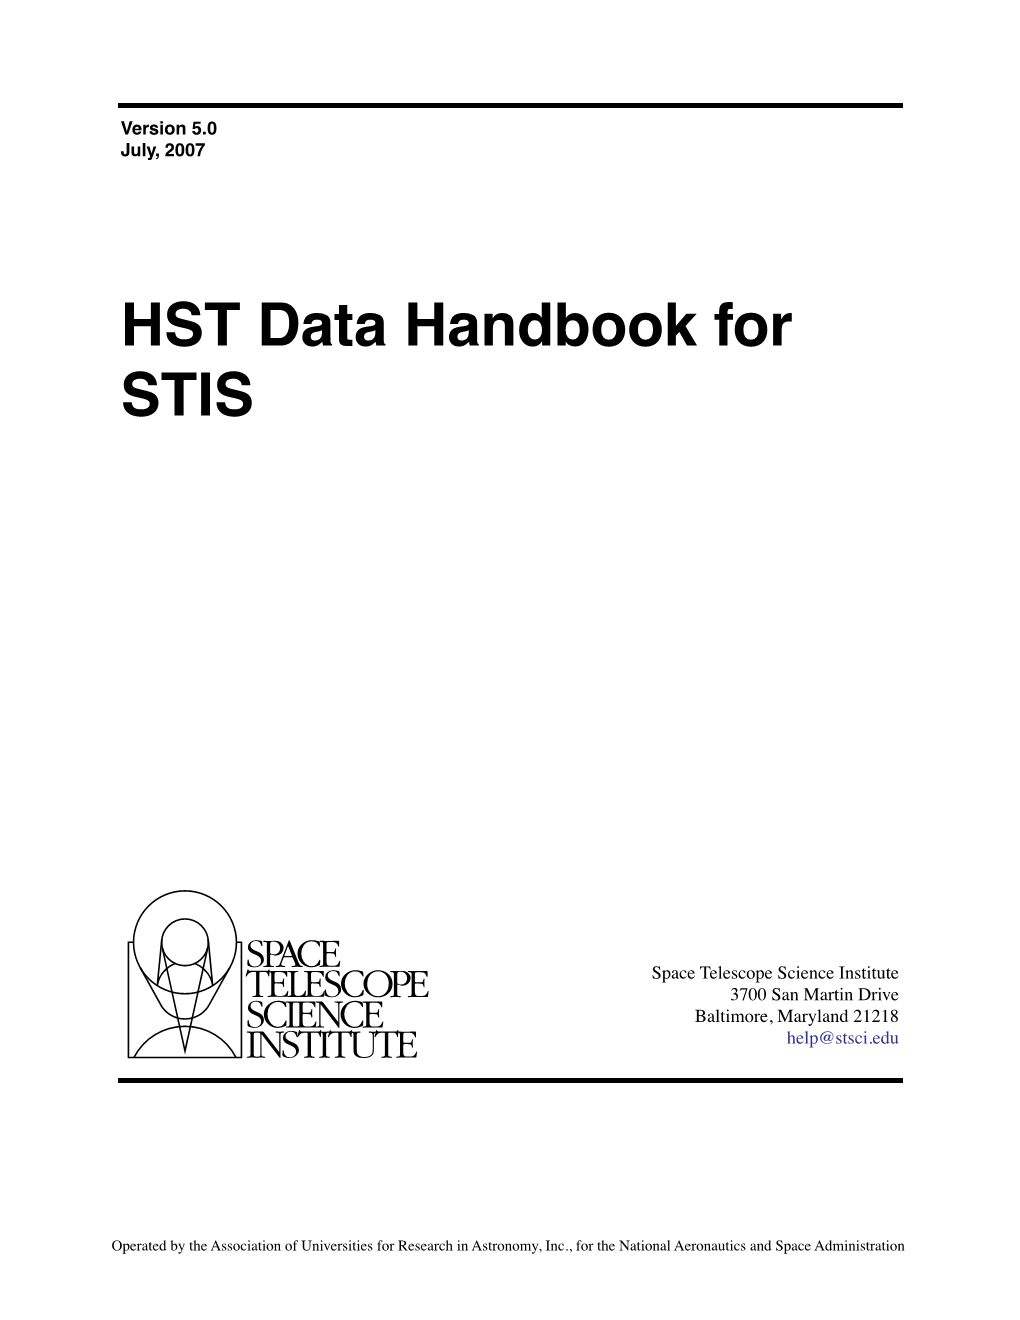 HST Data Handbook for STIS